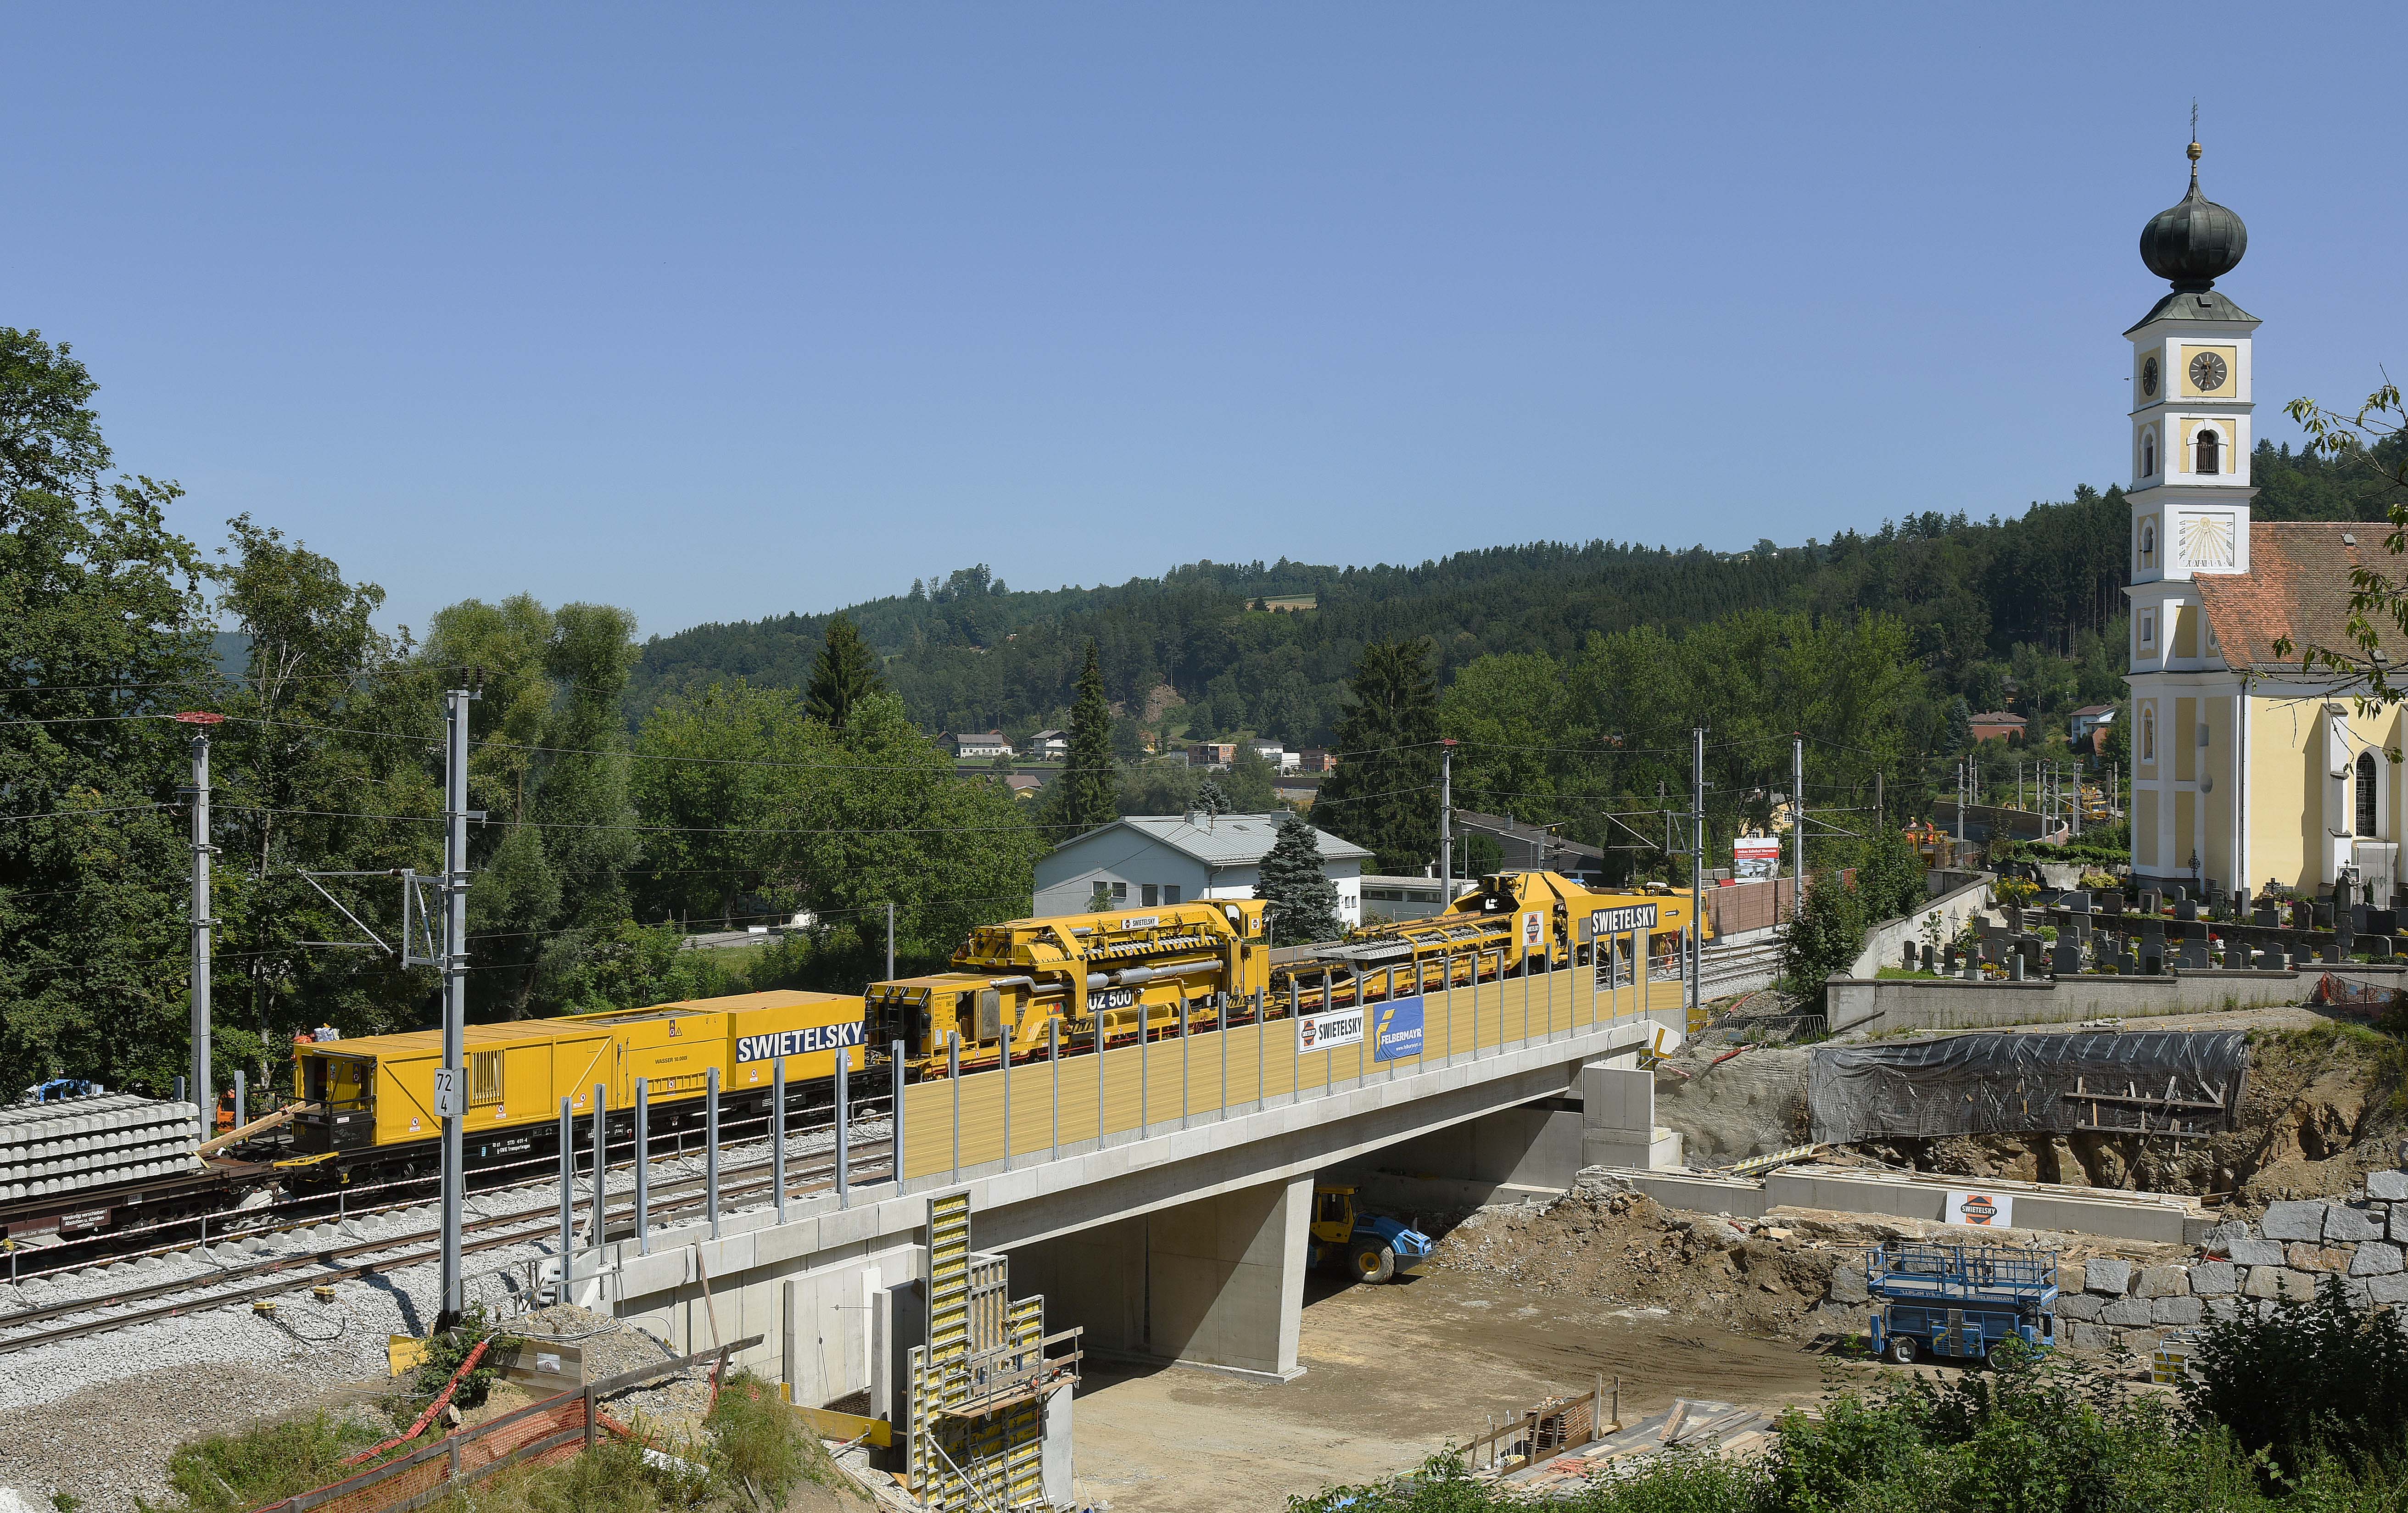 Umbau Bahnhof Wernstein - Izgradnja željezničke infrastrukture